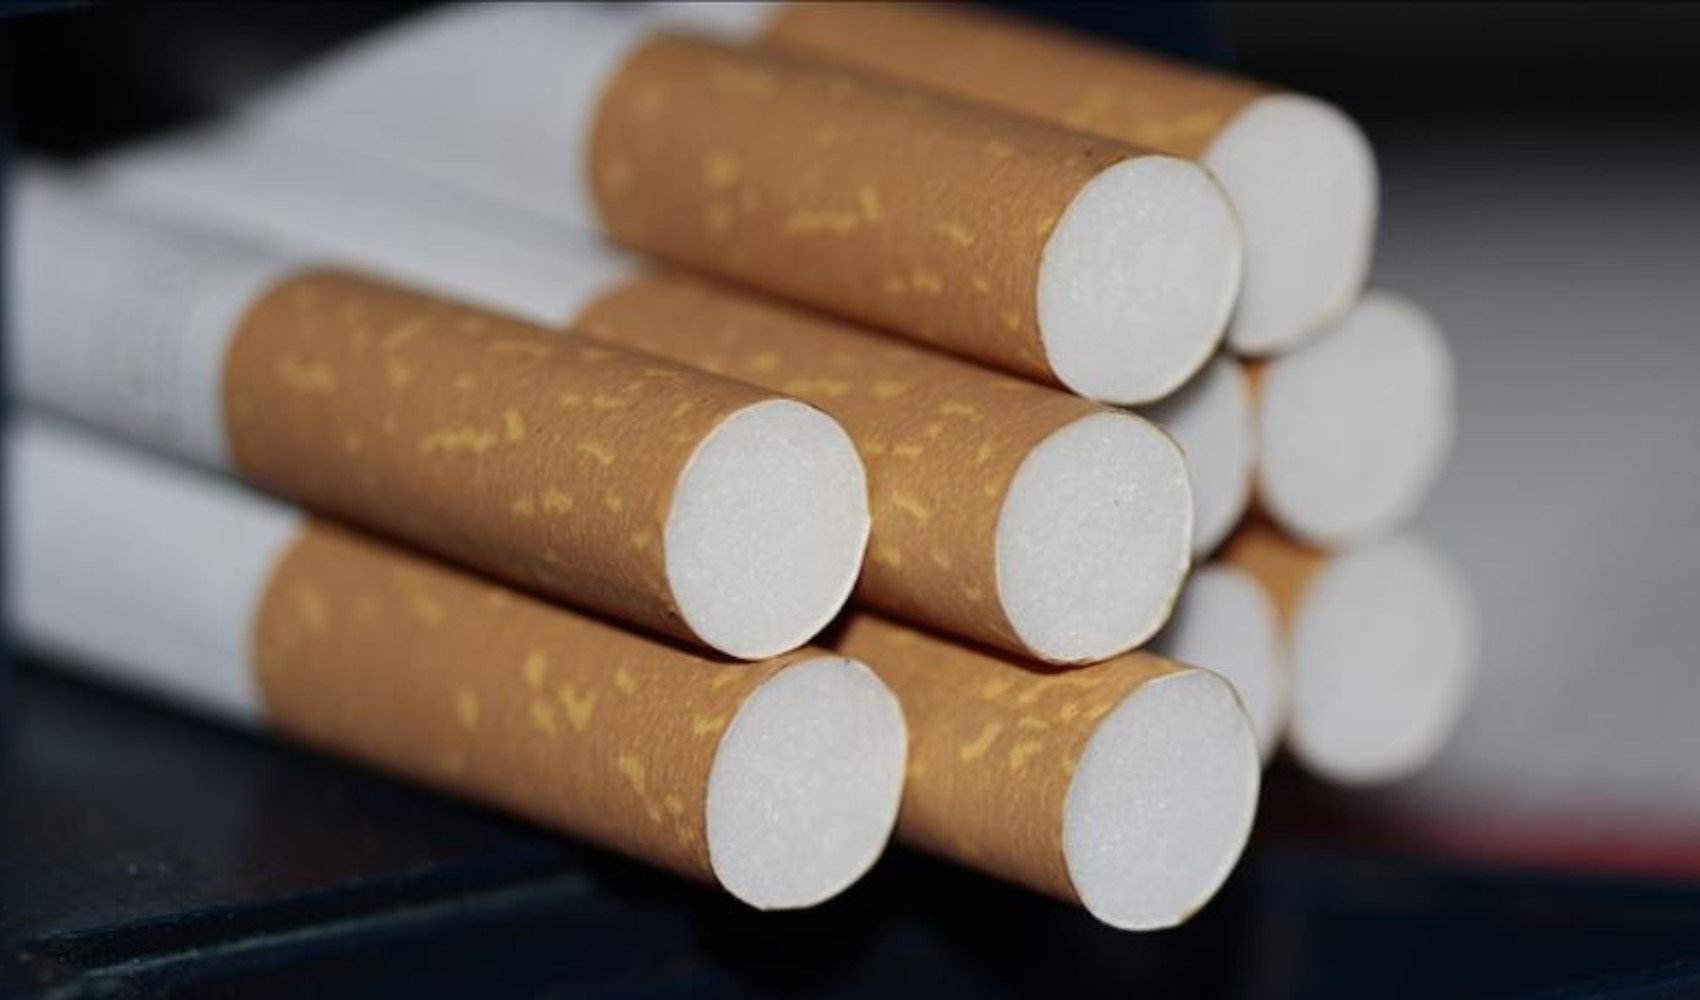 GİB sigaraya 6.5 lira ÖTV zammı geldiğini duyurdu: İşte zamlı sigara fiyatları